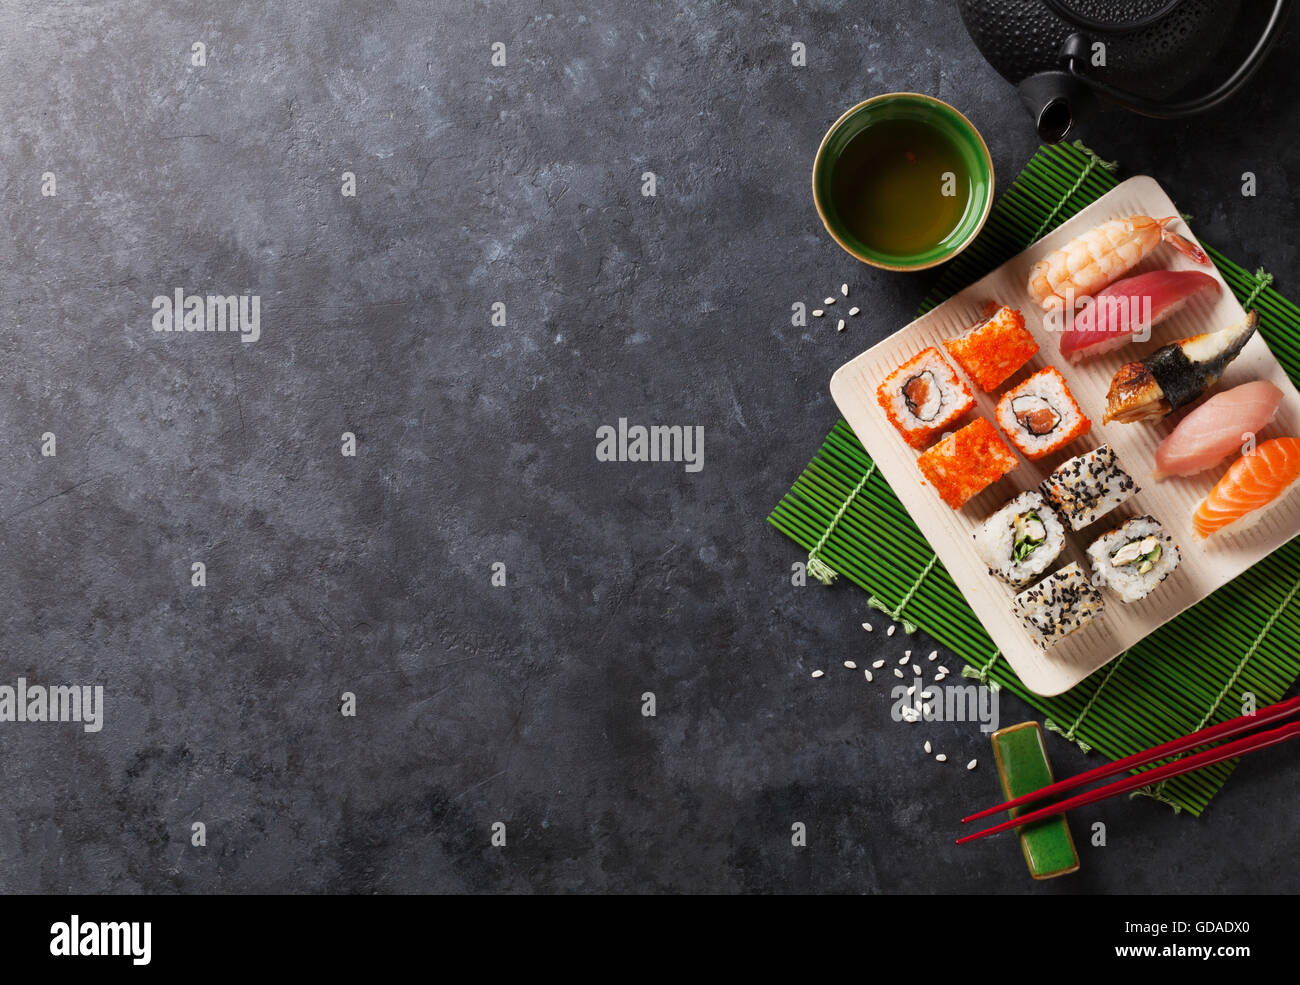 Ensemble de sushi, maki et thé vert sur table en pierre. Top View with copy space Banque D'Images